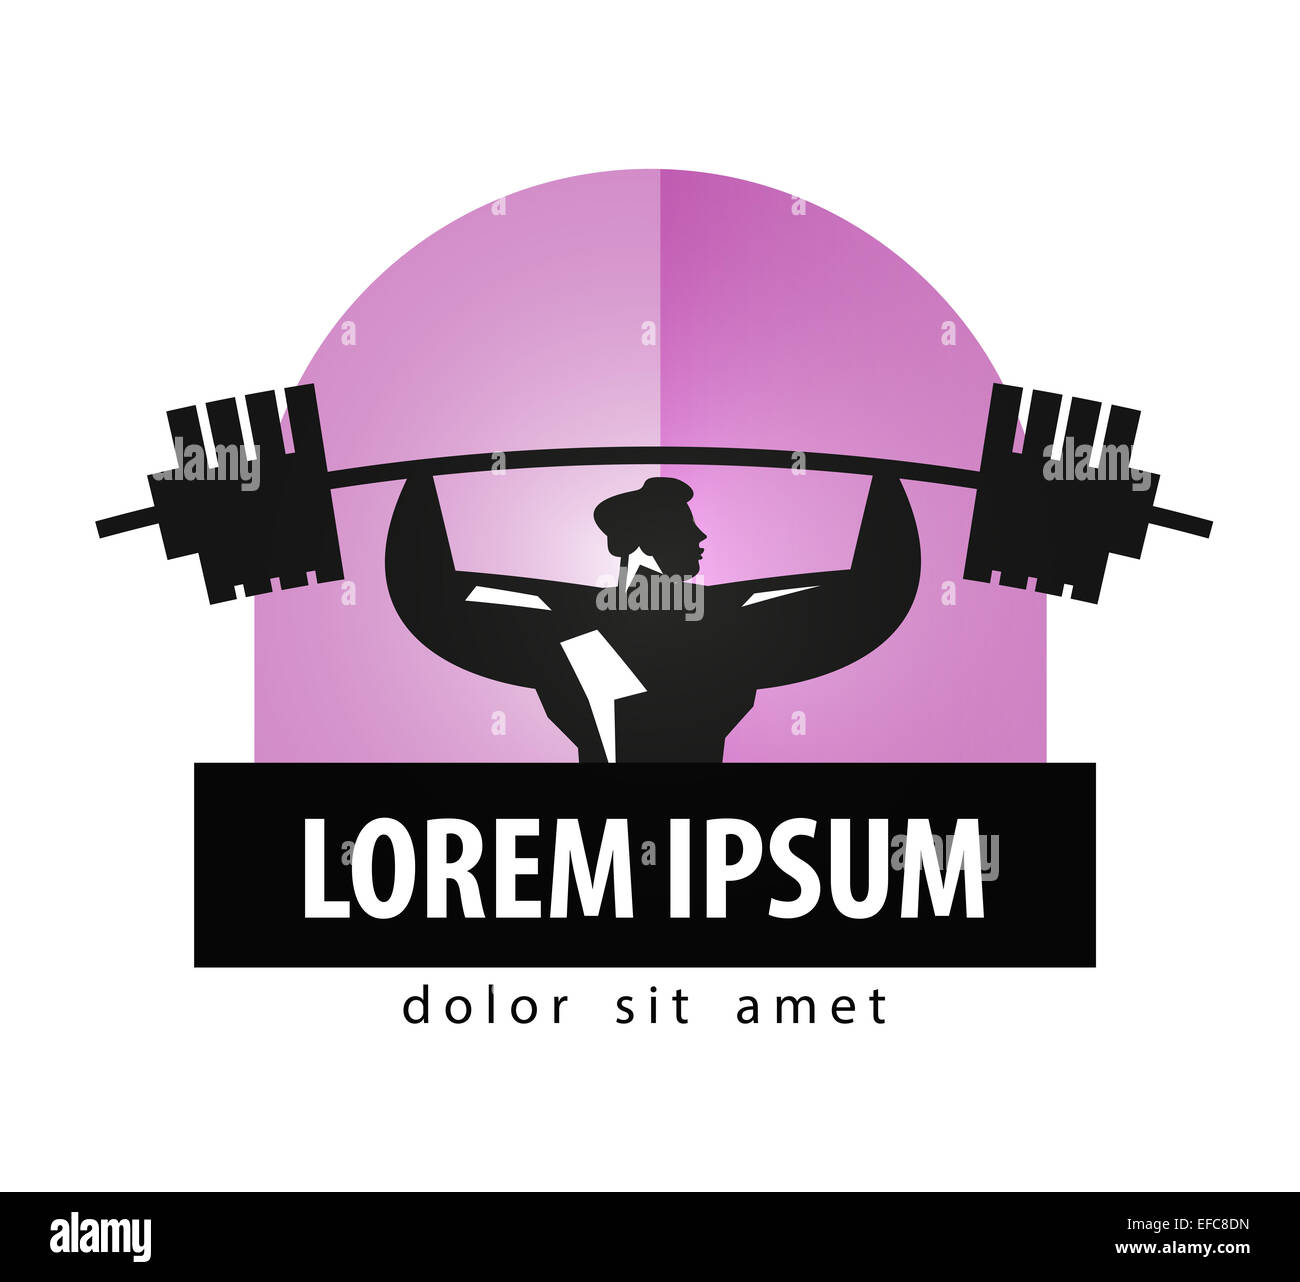 gym vector logo design template. Bodybuilding or sports icon. Stock Photo